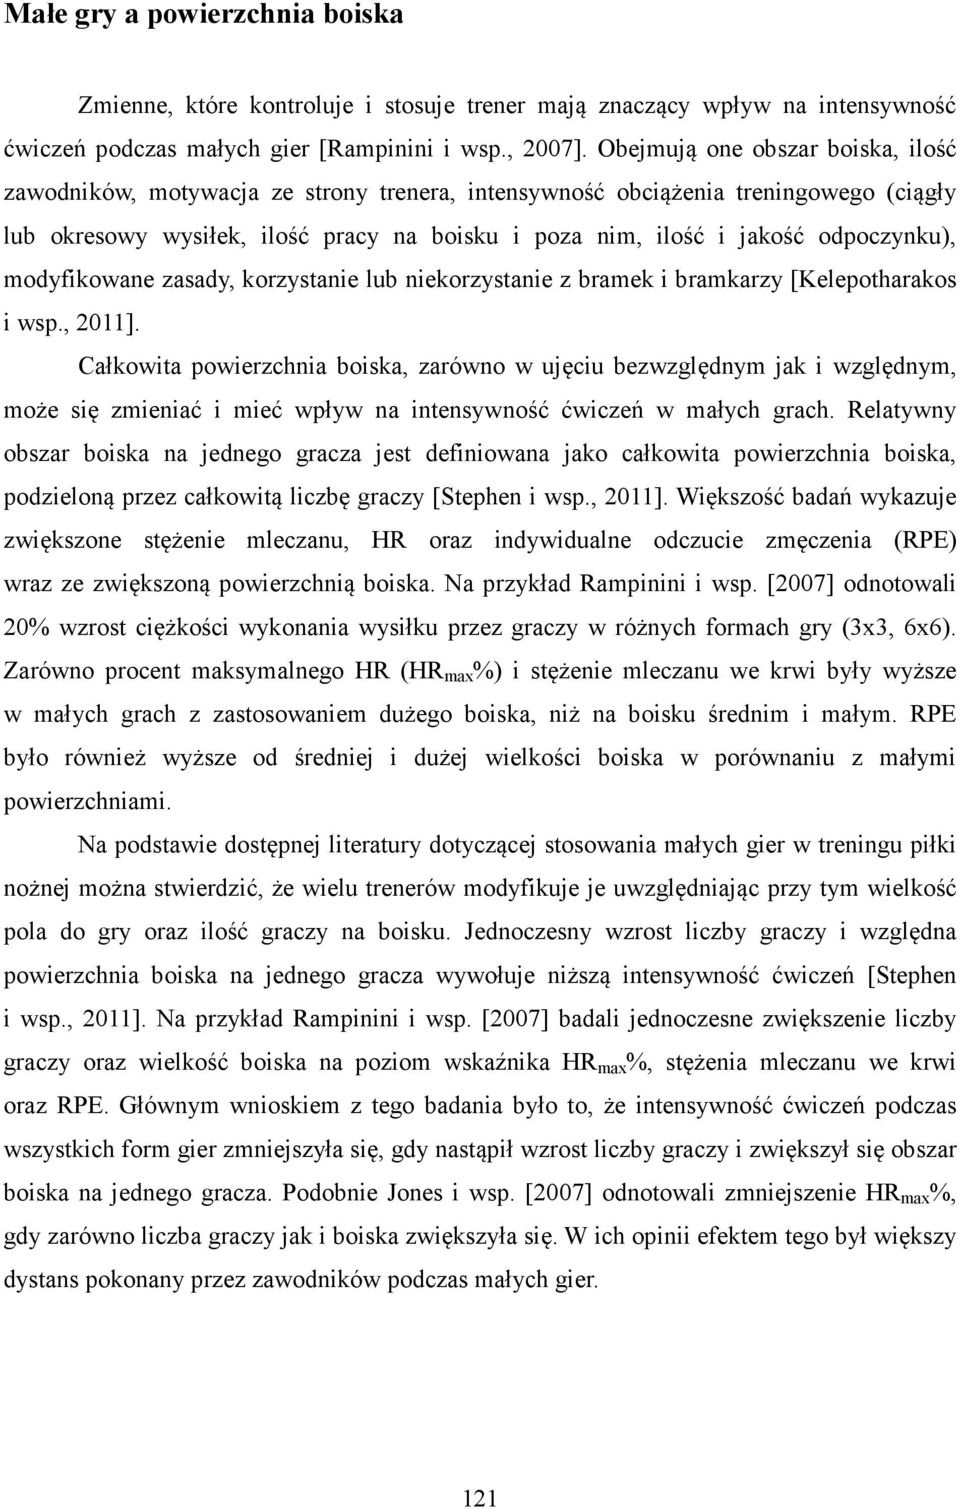 odpoczynku), modyfikowane zasady, korzystanie lub niekorzystanie z bramek i bramkarzy [Kelepotharakos i wsp., 2011].